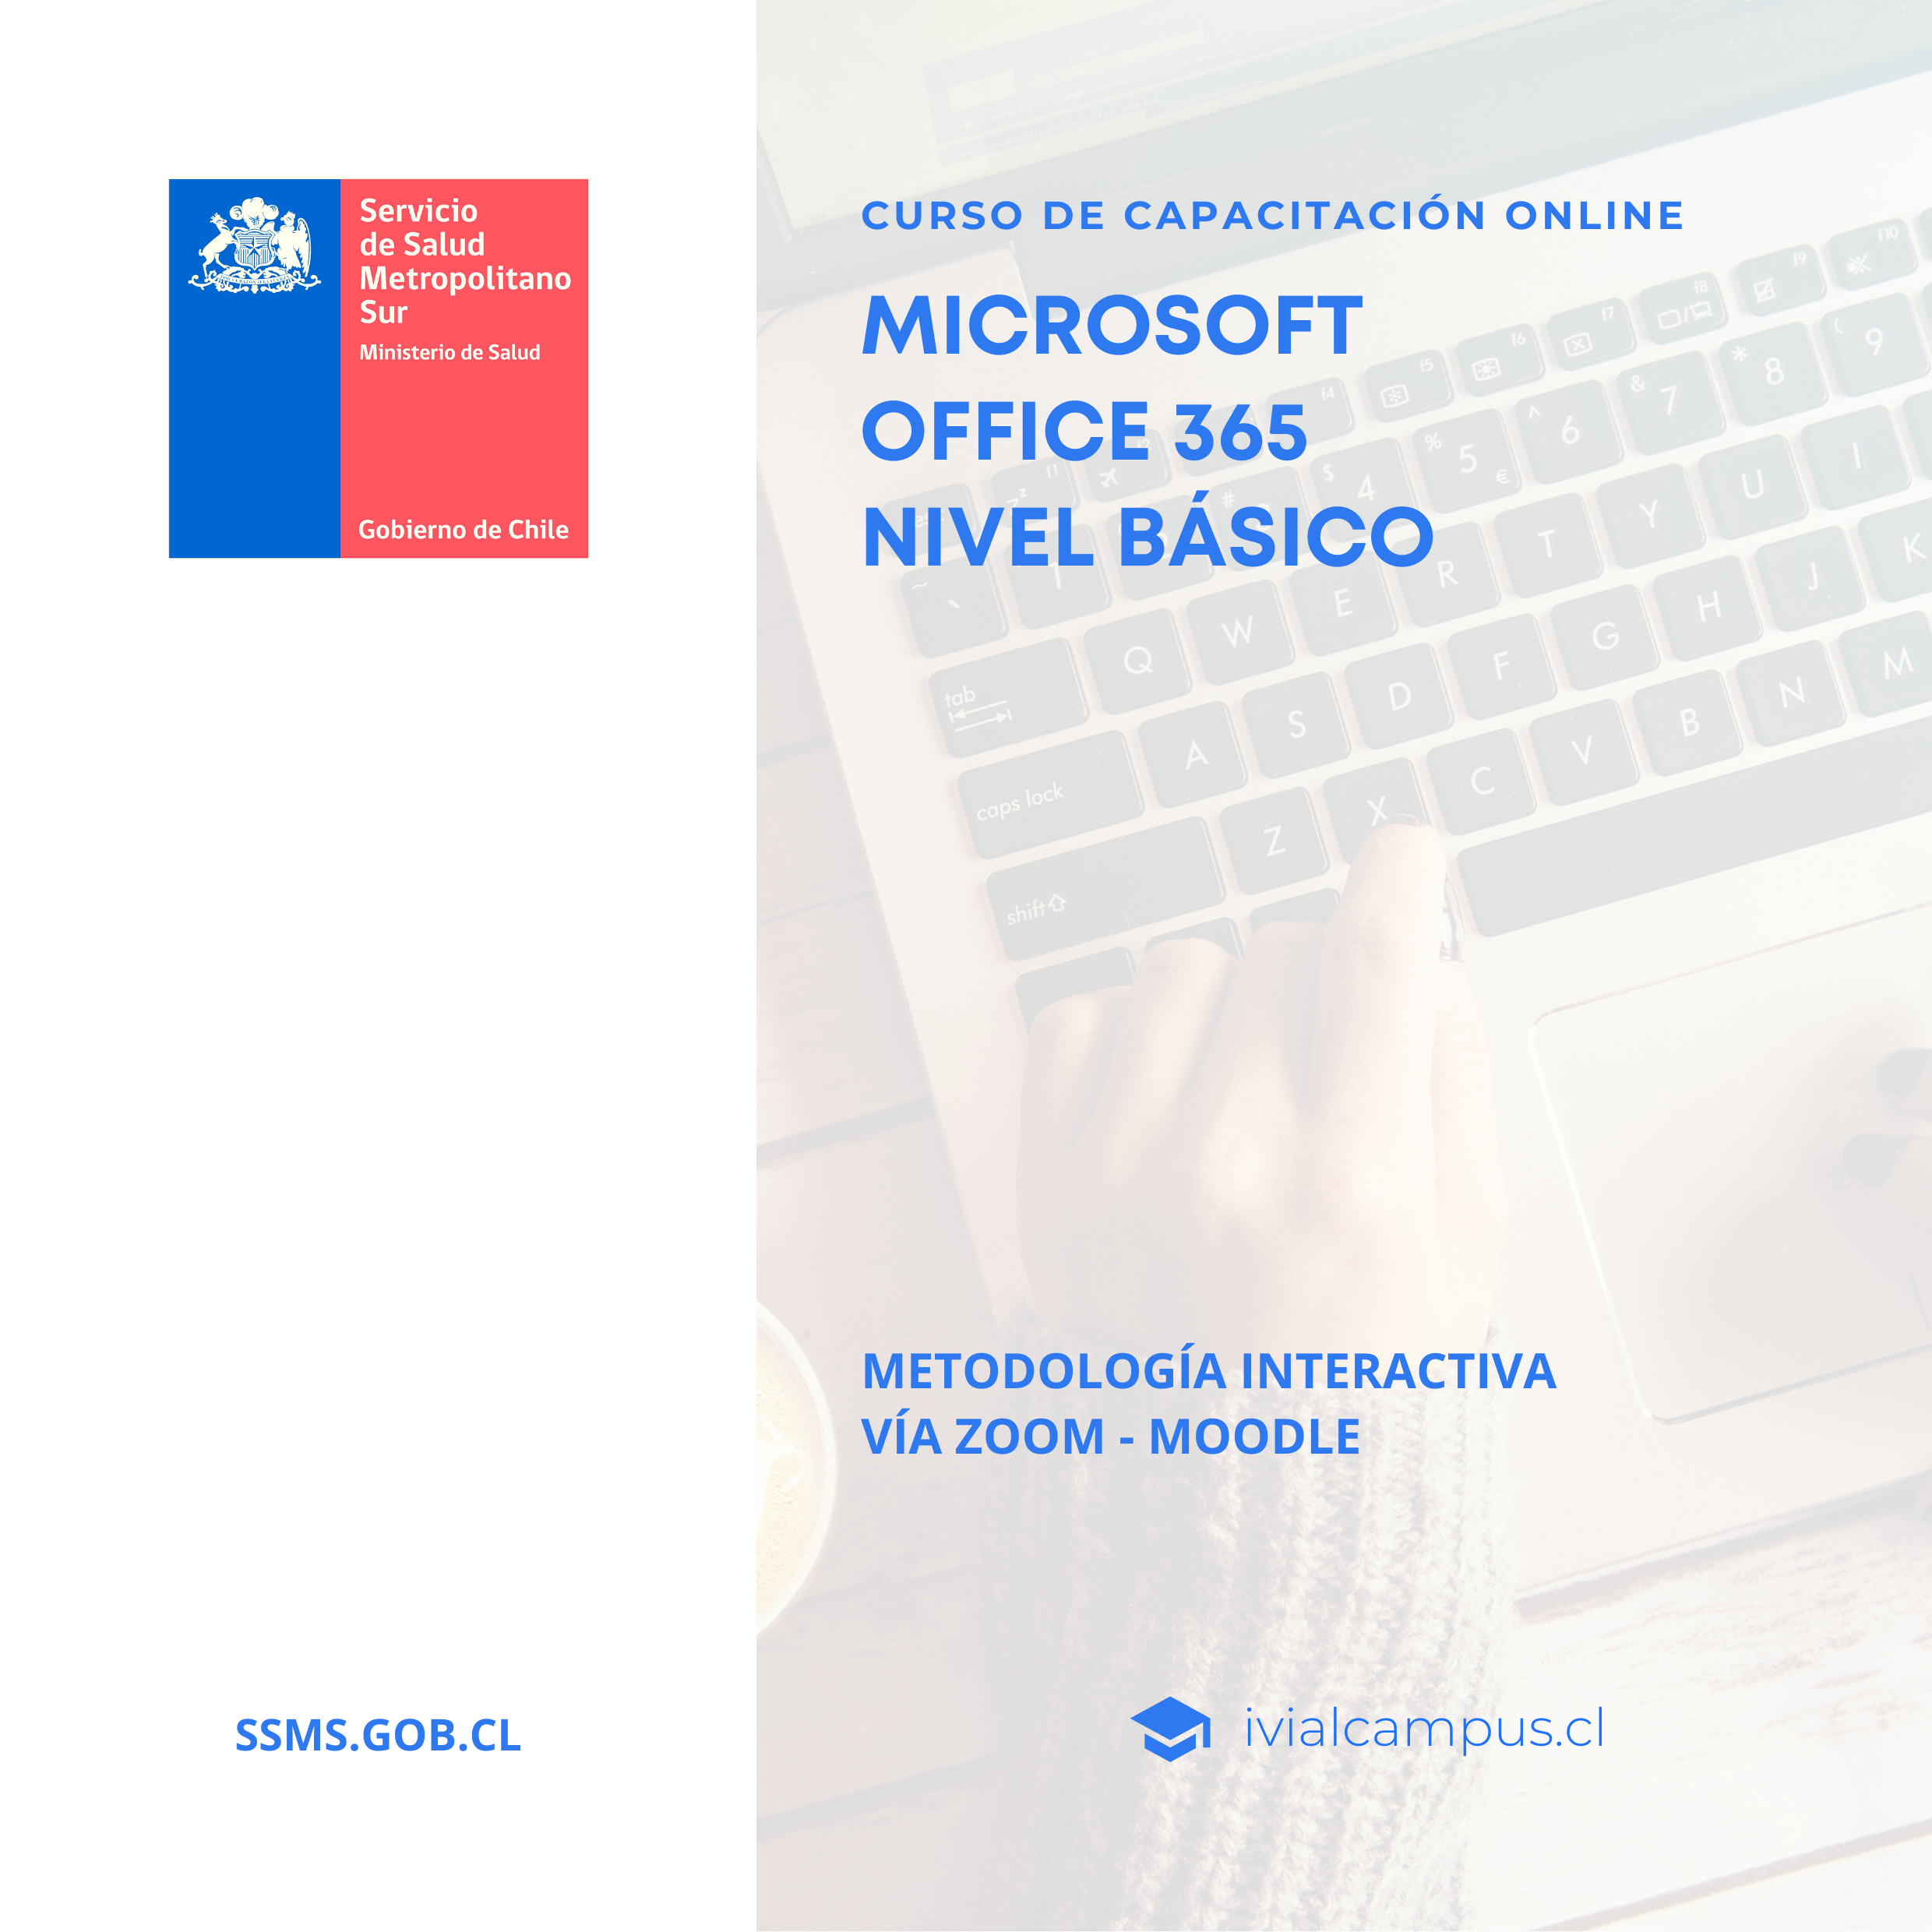 SERVICIO DE SALUD METROPOLITANO SUR: Microsoft Office 365 Nivel Básico